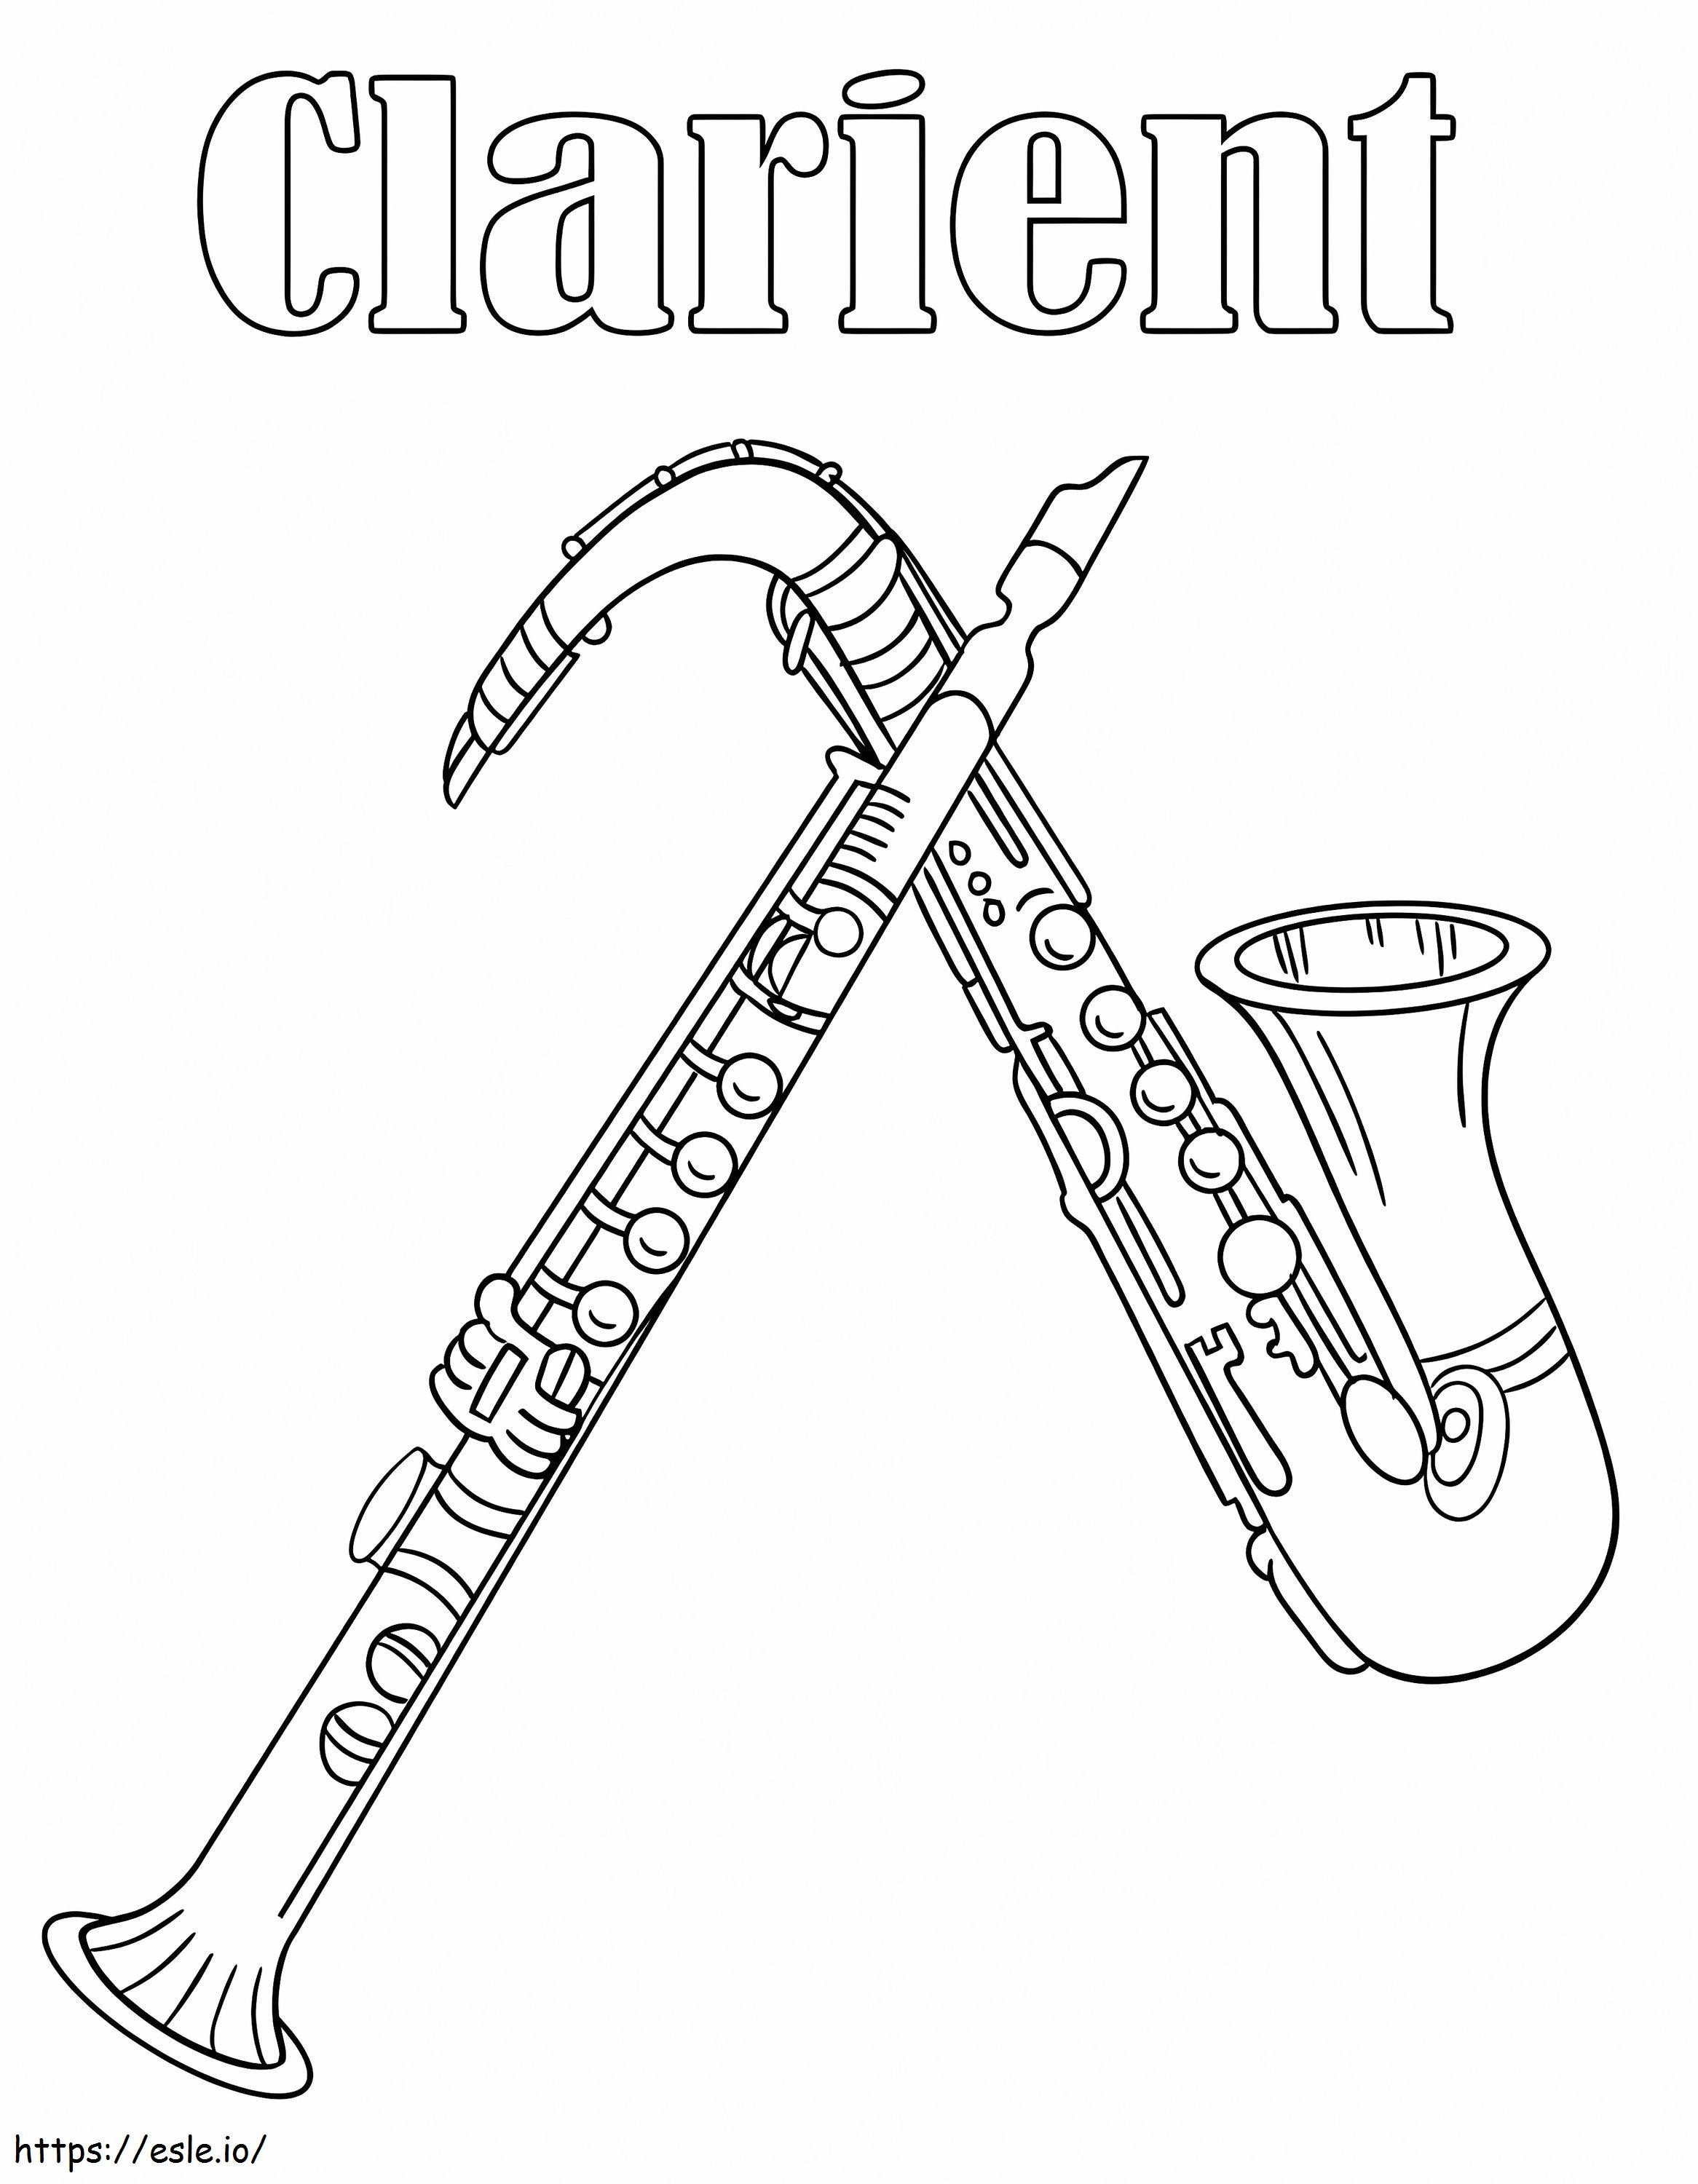 Coloriage Clarinette Et Saxophone à imprimer dessin